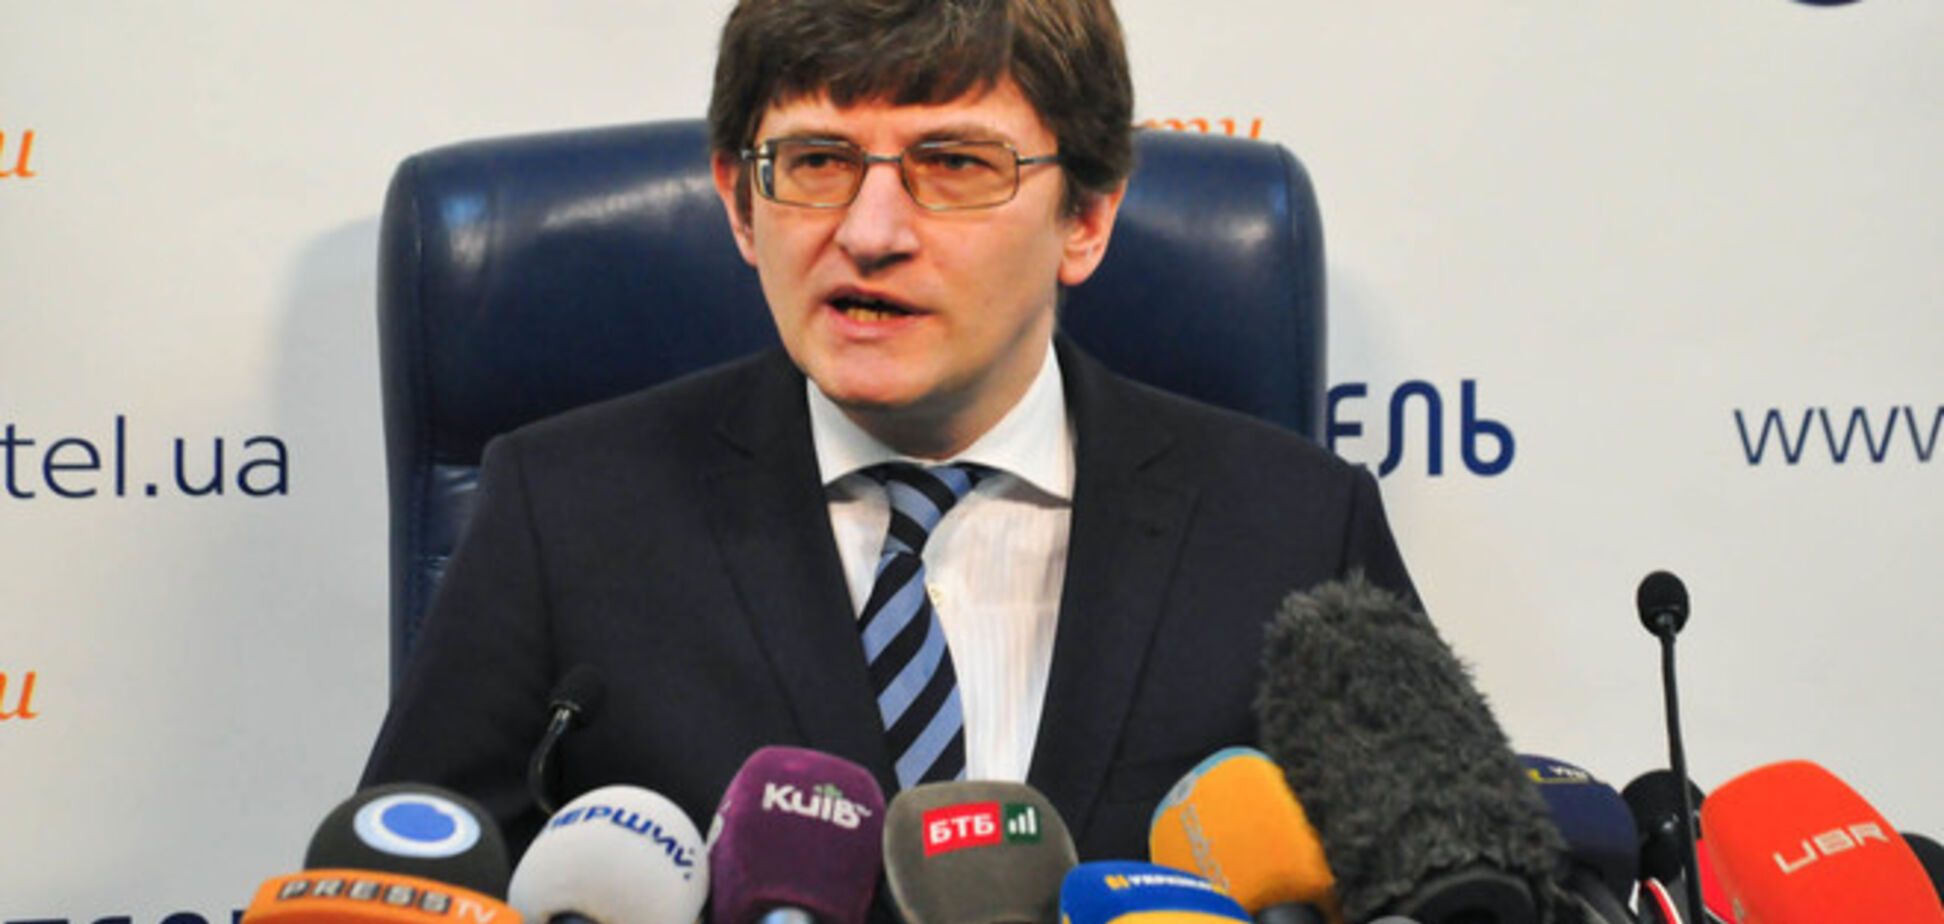 Около 150 крымчан захотели голосовать на выборах 25 мая - Магера